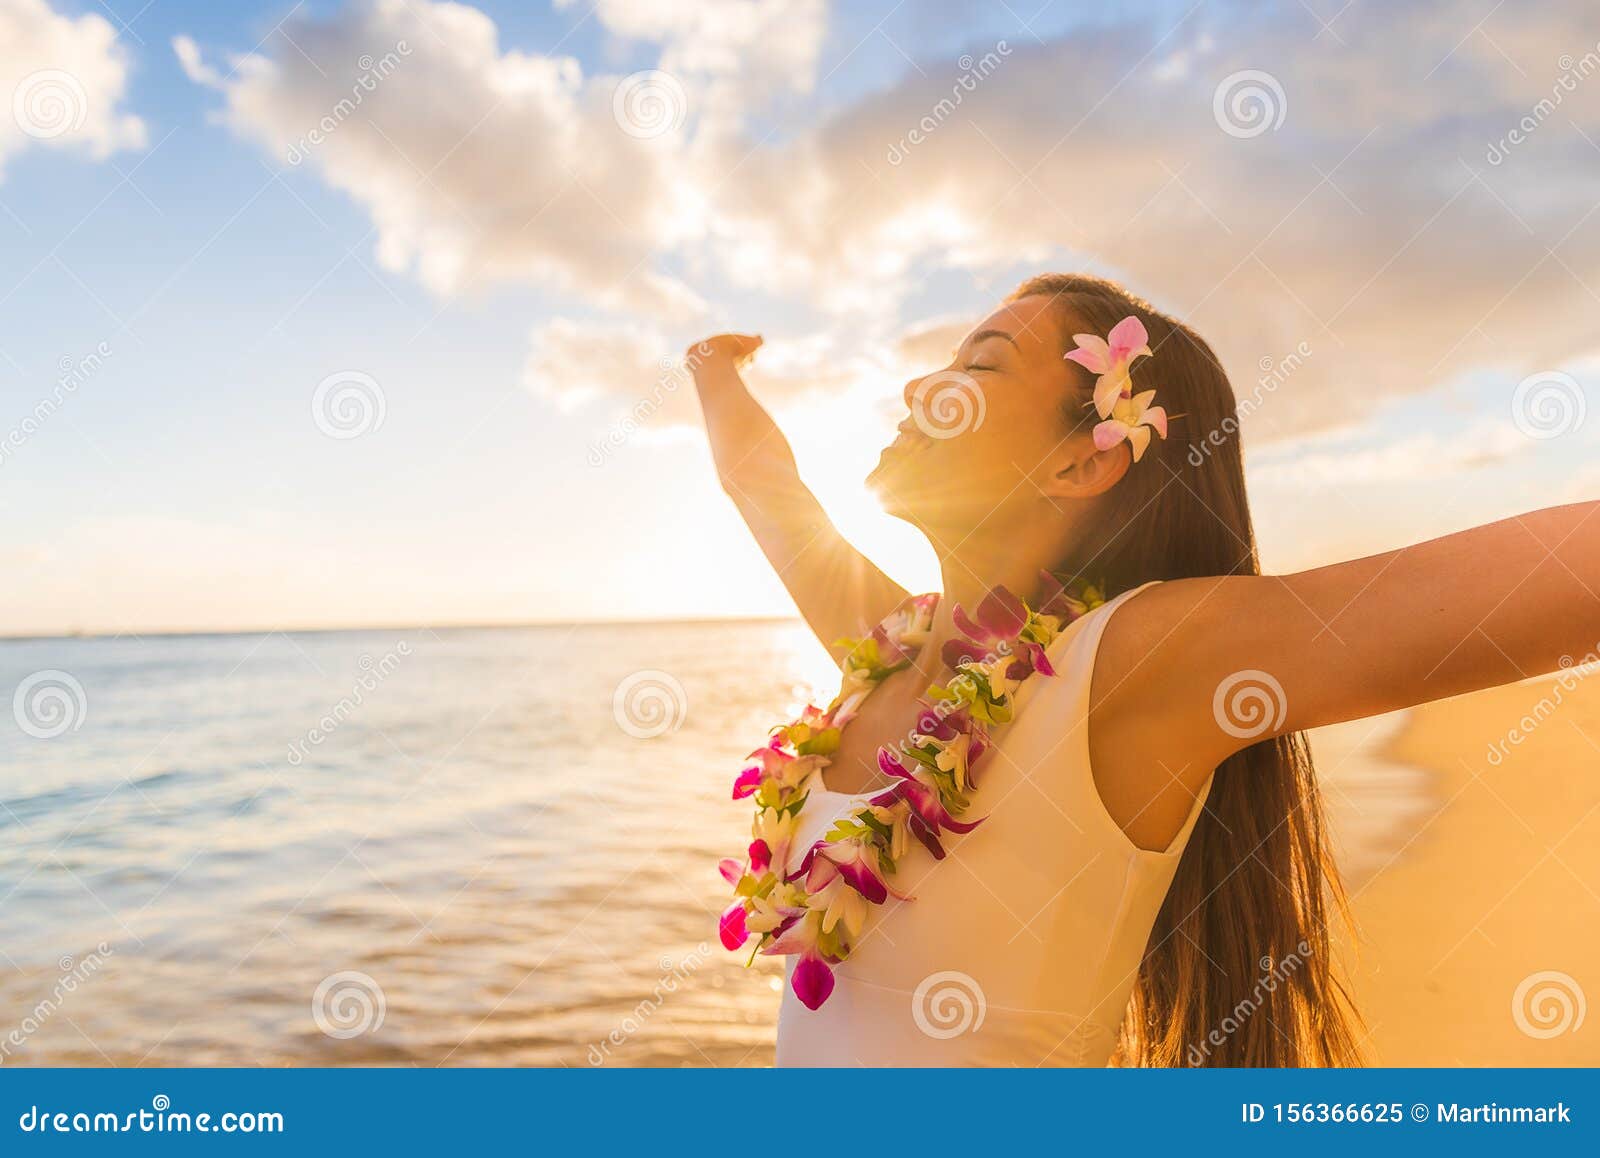 Lot de 120 Colliers Hawaiens rose bleu violet HK-23 collier hawaien Hawaï hawaii Hula fleur pétale ambiance tropique déguisement fête beach party été plage printemps accessoire mariage anniversaire 